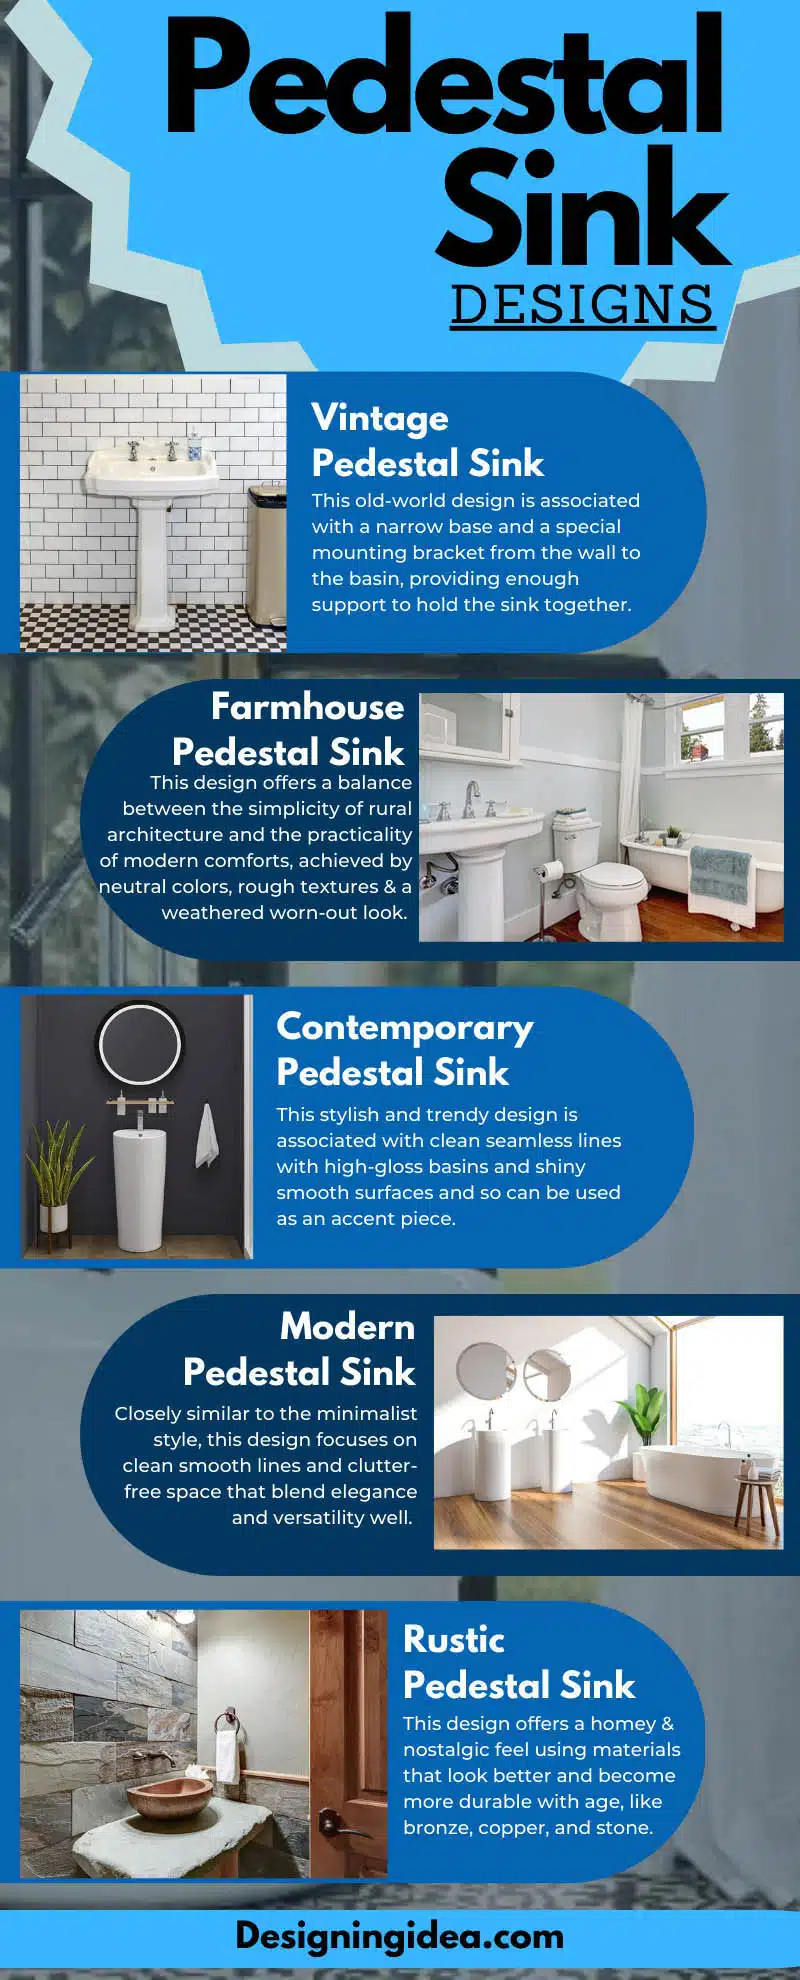 Pedestal sink designs infographic